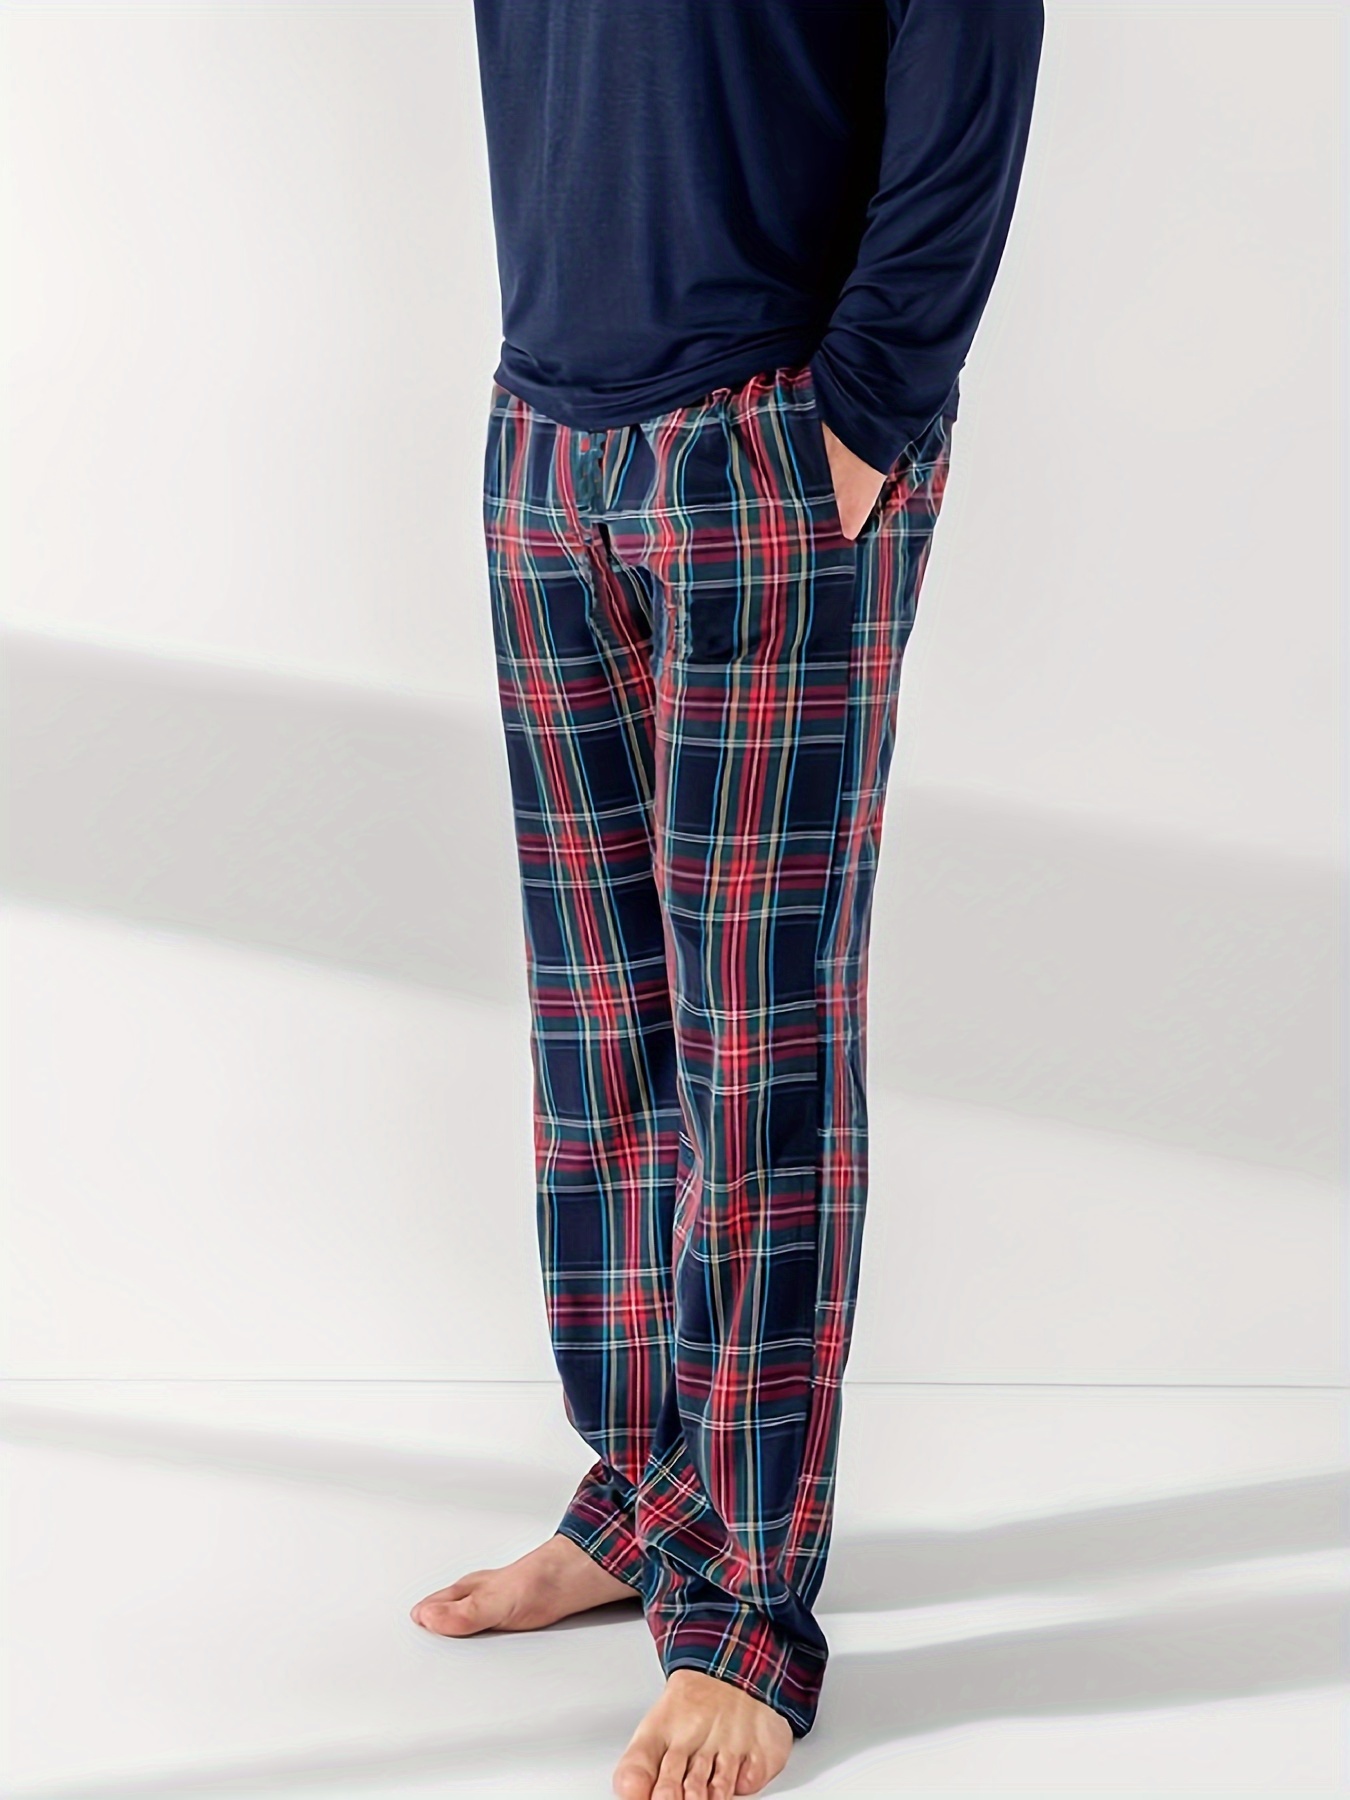 Men's Classic Plaid Pajama Shorts Elastic Waist Shorts - Temu